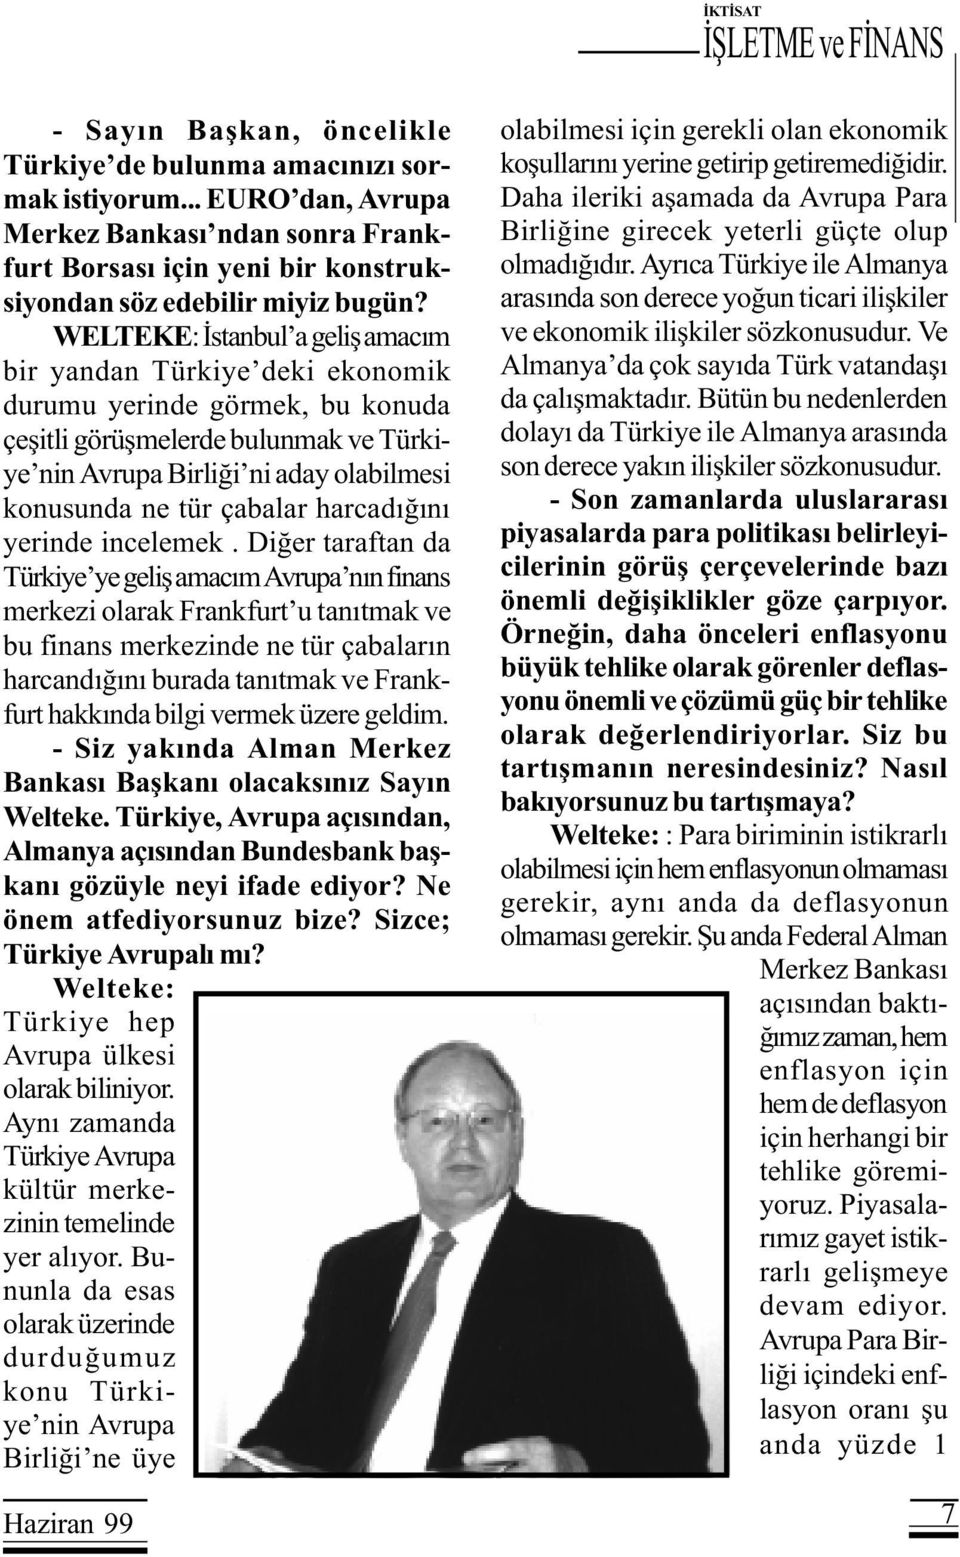 WELTEKE: Ýstanbul a geliþ amacým bir yandan Türkiye deki ekonomik durumu yerinde görmek, bu konuda çeþitli görüþmelerde bulunmak ve Türkiye nin Avrupa Birliði ni aday olabilmesi konusunda ne tür